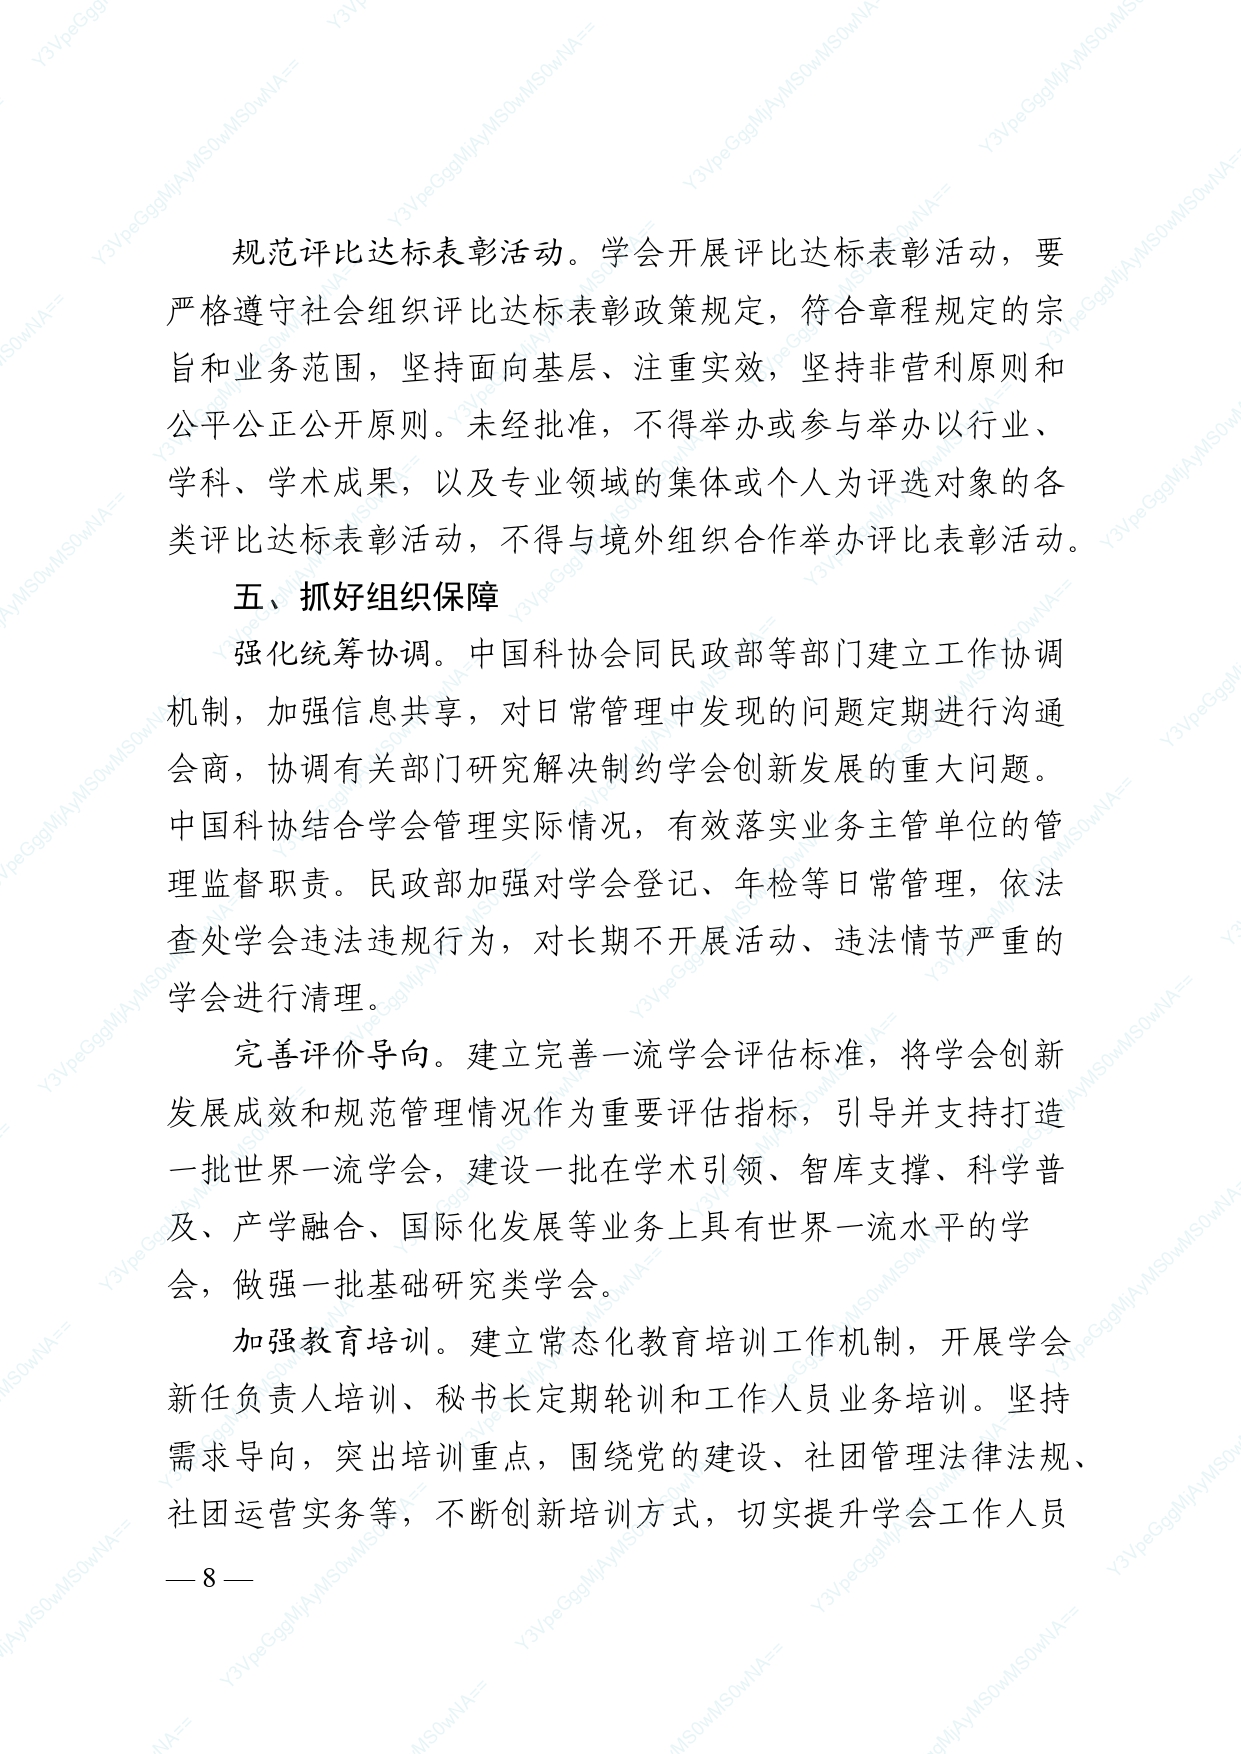 中国科协 民政部印发《关于进一步推动中国科协学会创新发展的意见》的通知_page-0008.jpg